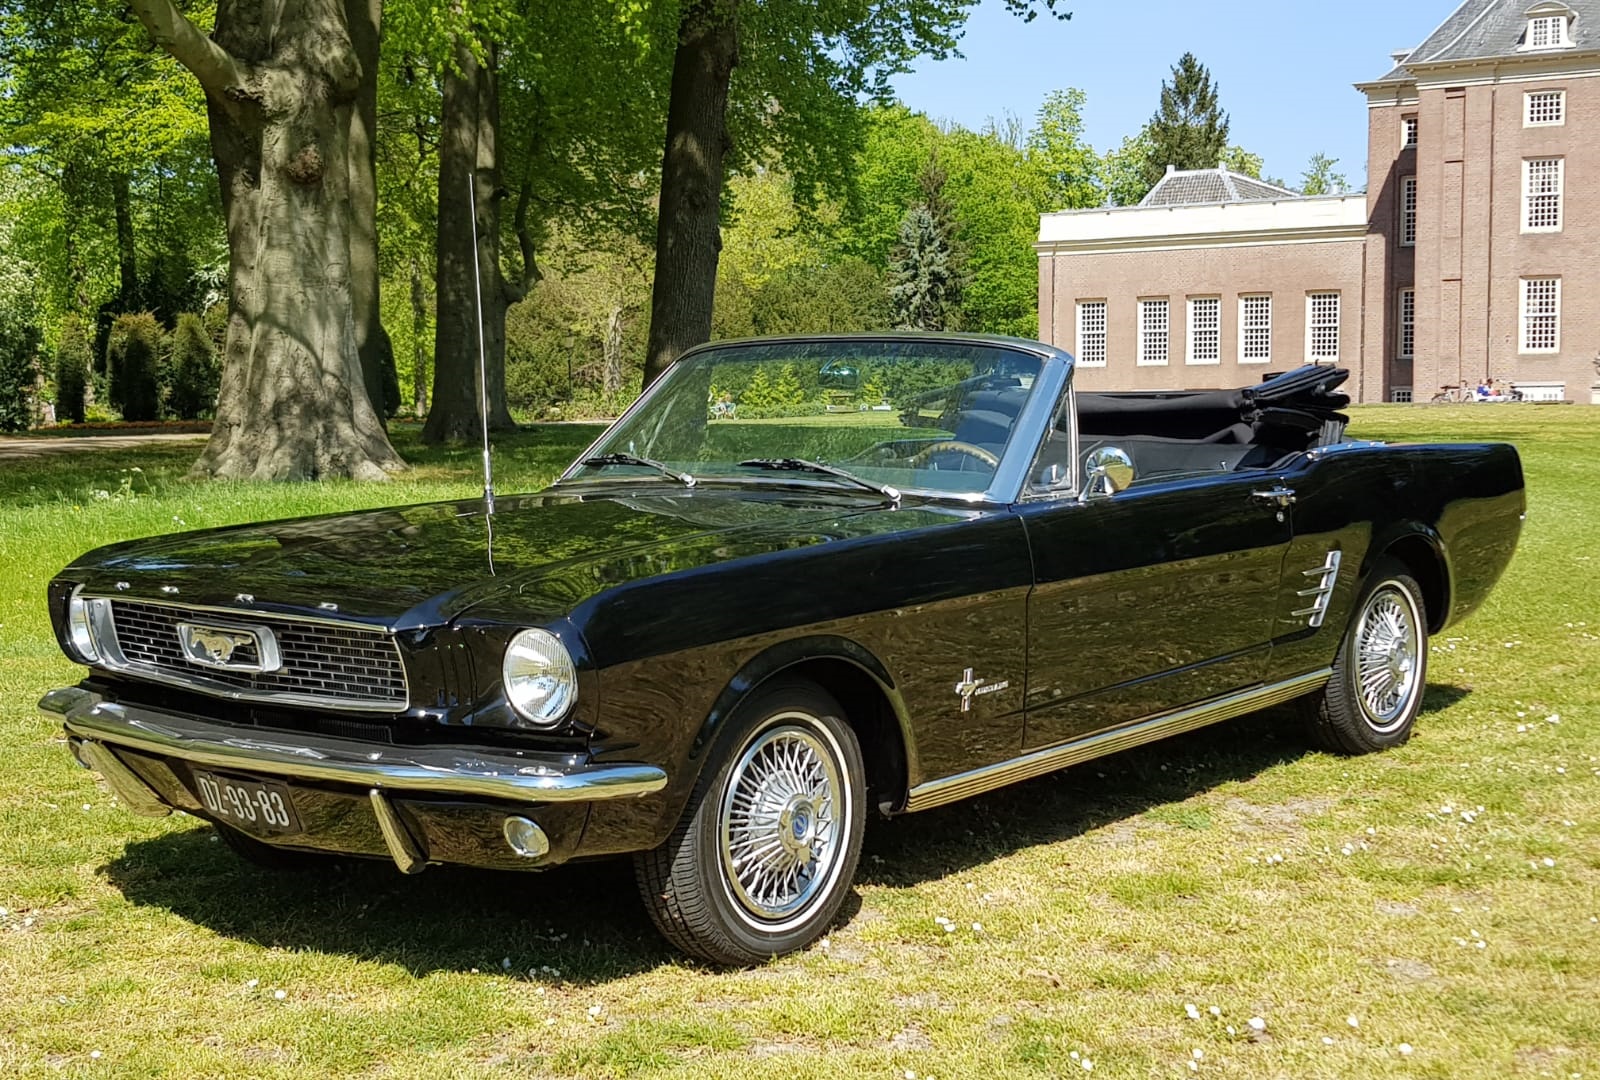 Nodig hebben Scherm uitvinden Zwarte Ford Mustang cabriolet uit 1966 - Bekijk nu snel Trouwautoshop.nl